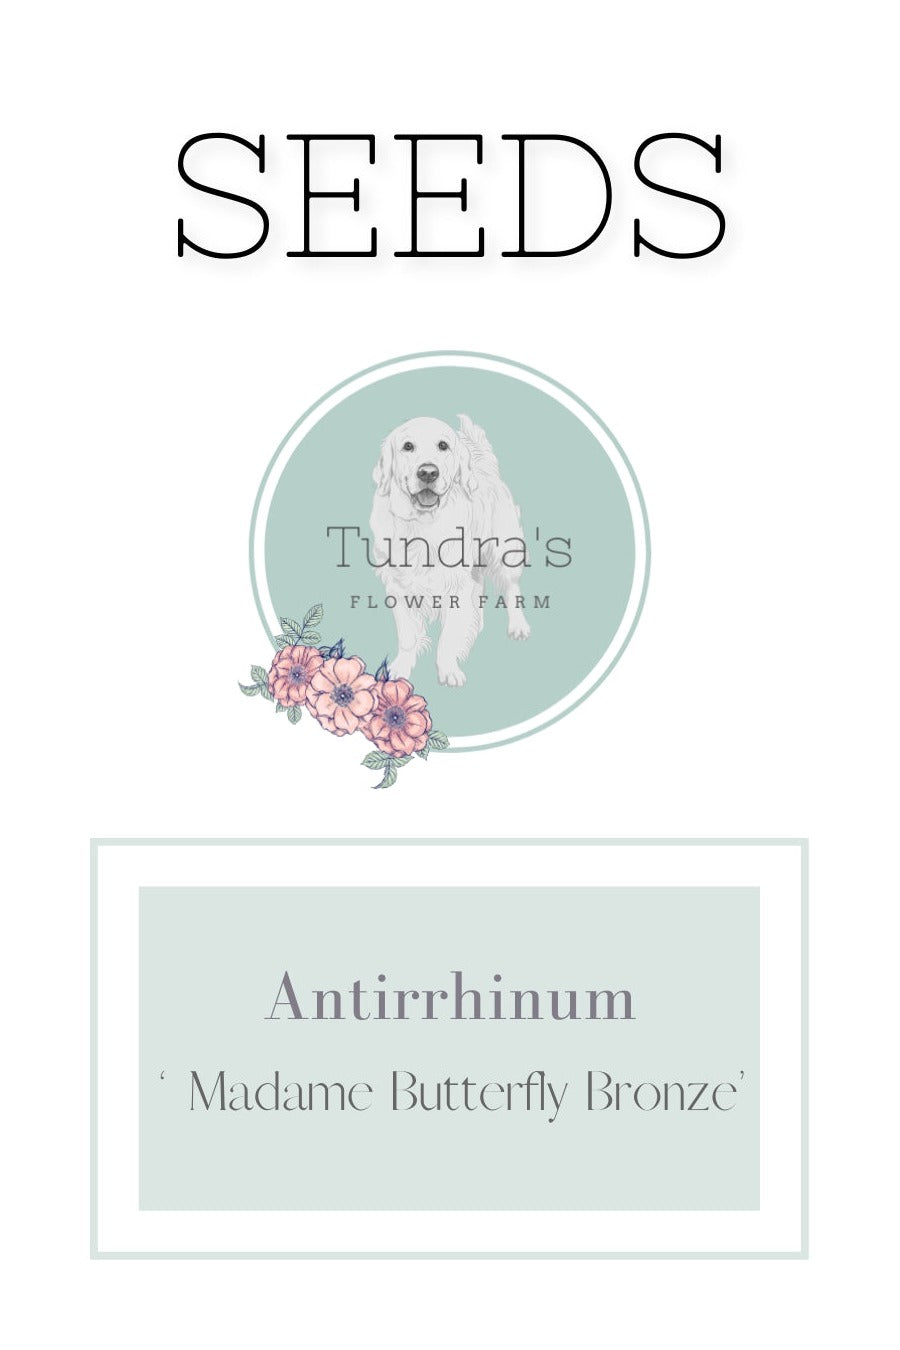 Antirrhinum Seeds - Madame Butterfly Bronze